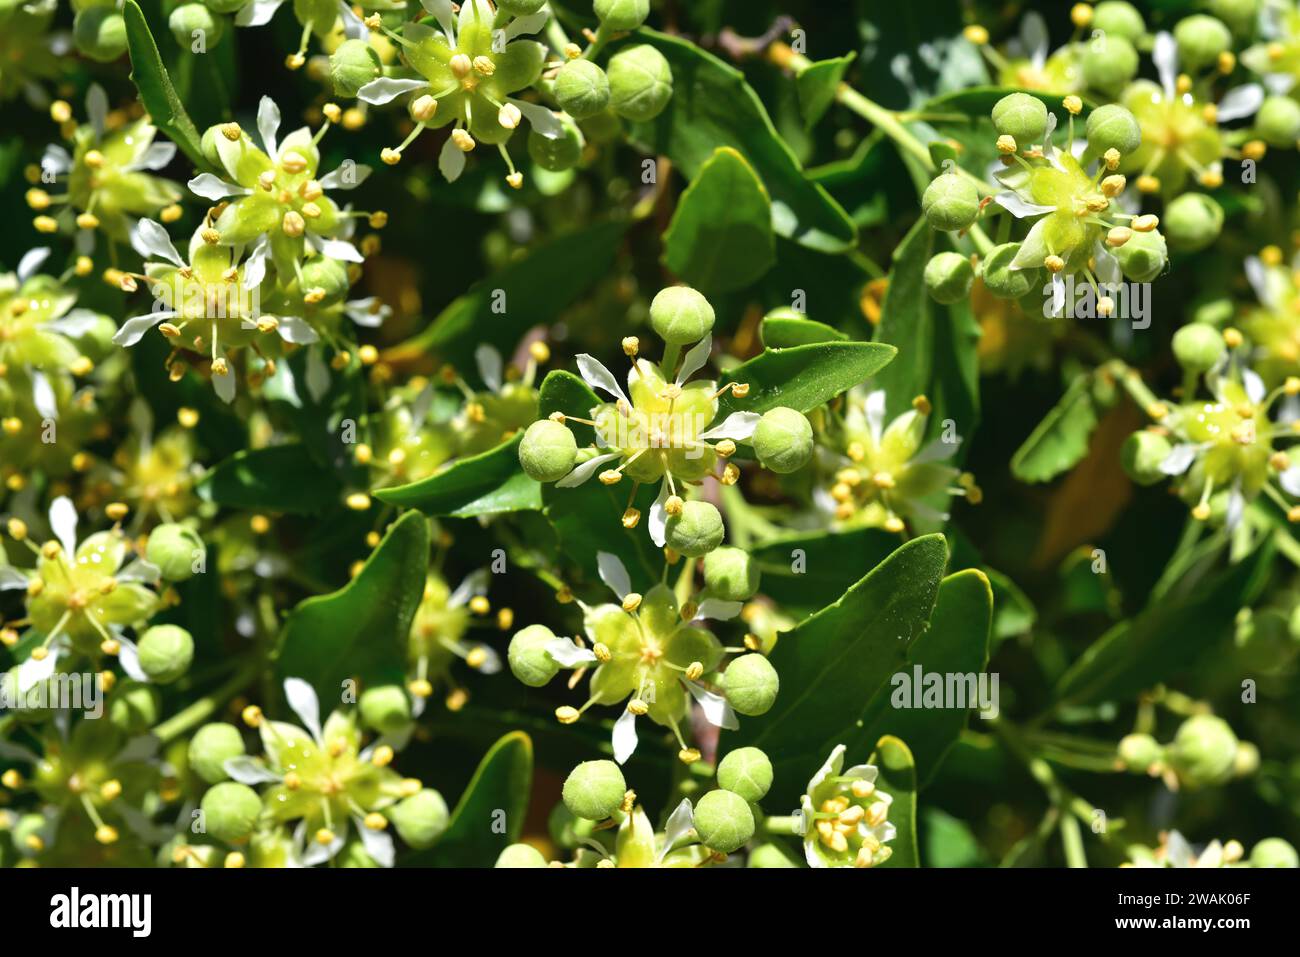 La corteccia di sapone (Quillaja saponaria) è un albero sempreverde endemico del Cile centrale. La sua corteccia contiene saponina utilizzata in farmacia, cosmetica e industria. Foto Stock